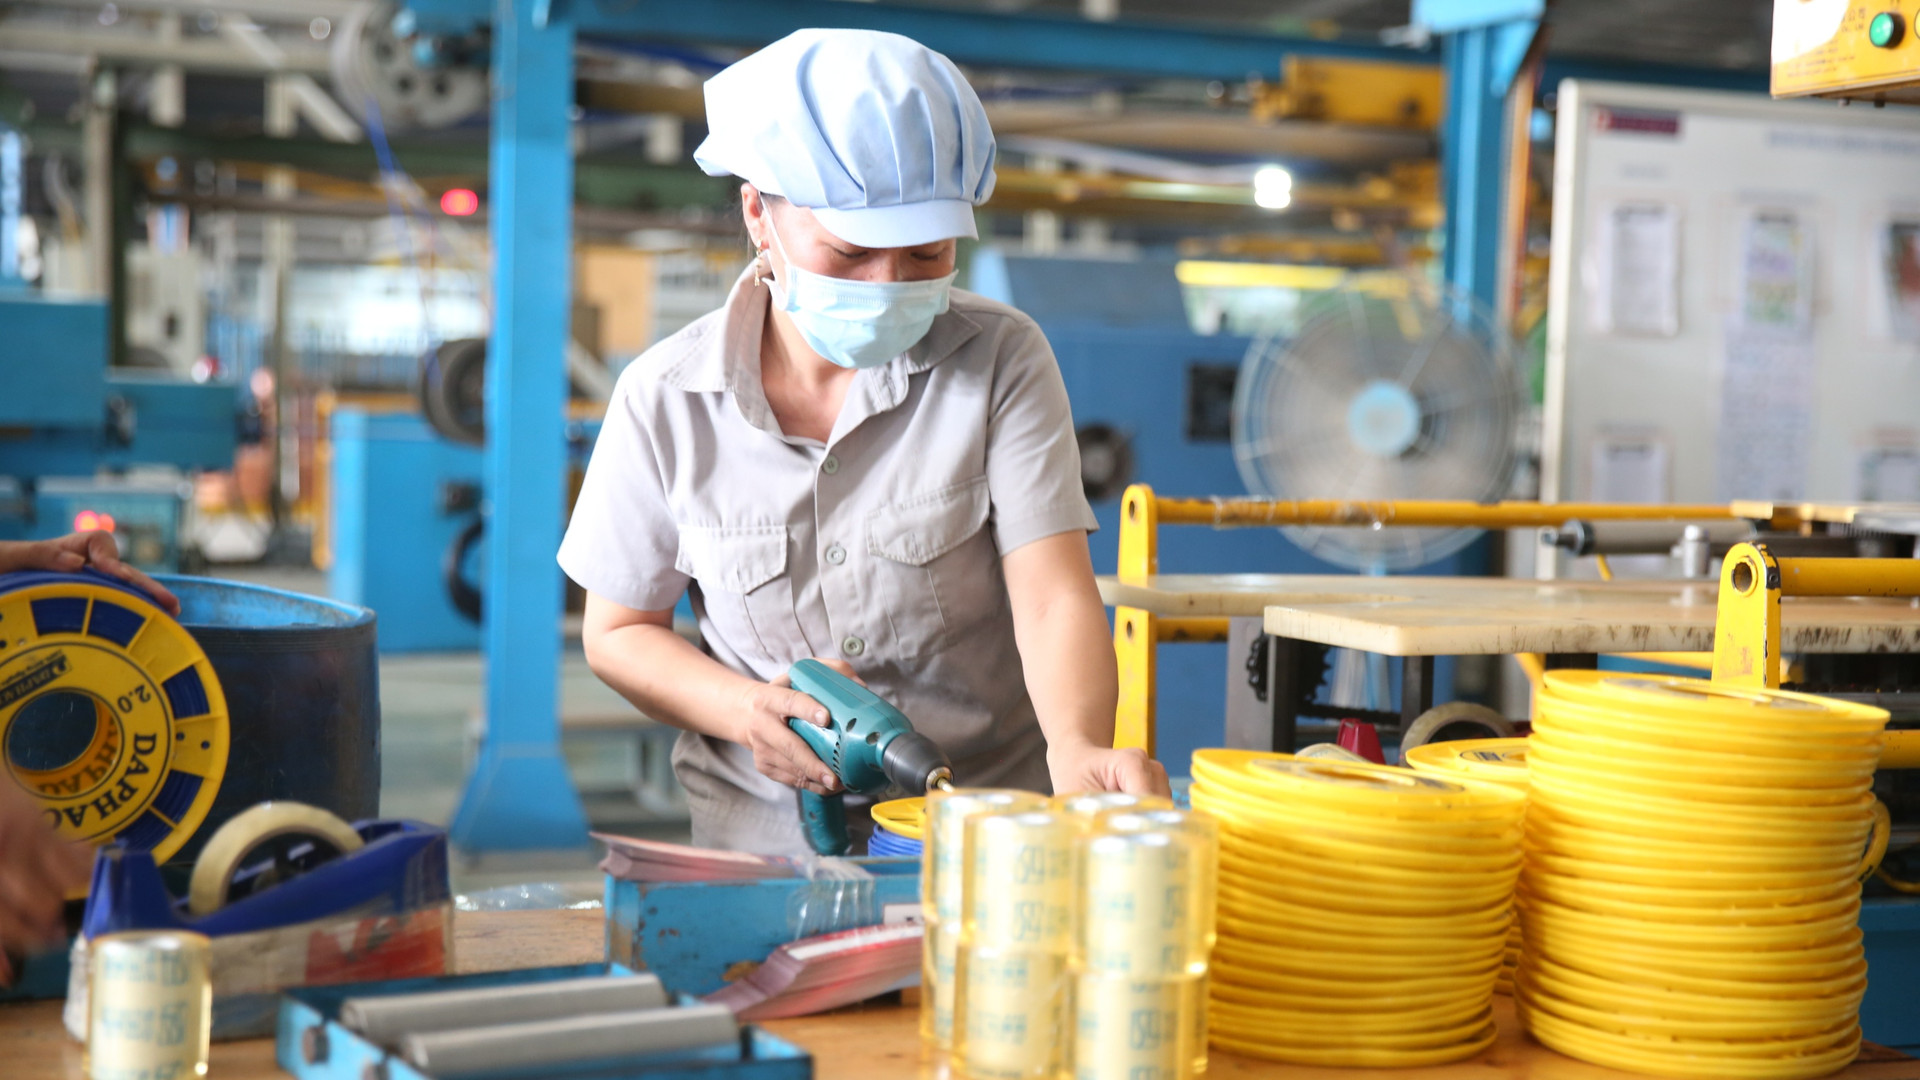 Tỷ lệ tăng lương của lao động Việt Nam năm 2023 được dự báo sẽ cao nhất trong khu vực Đông Nam Á - Ảnh 1.